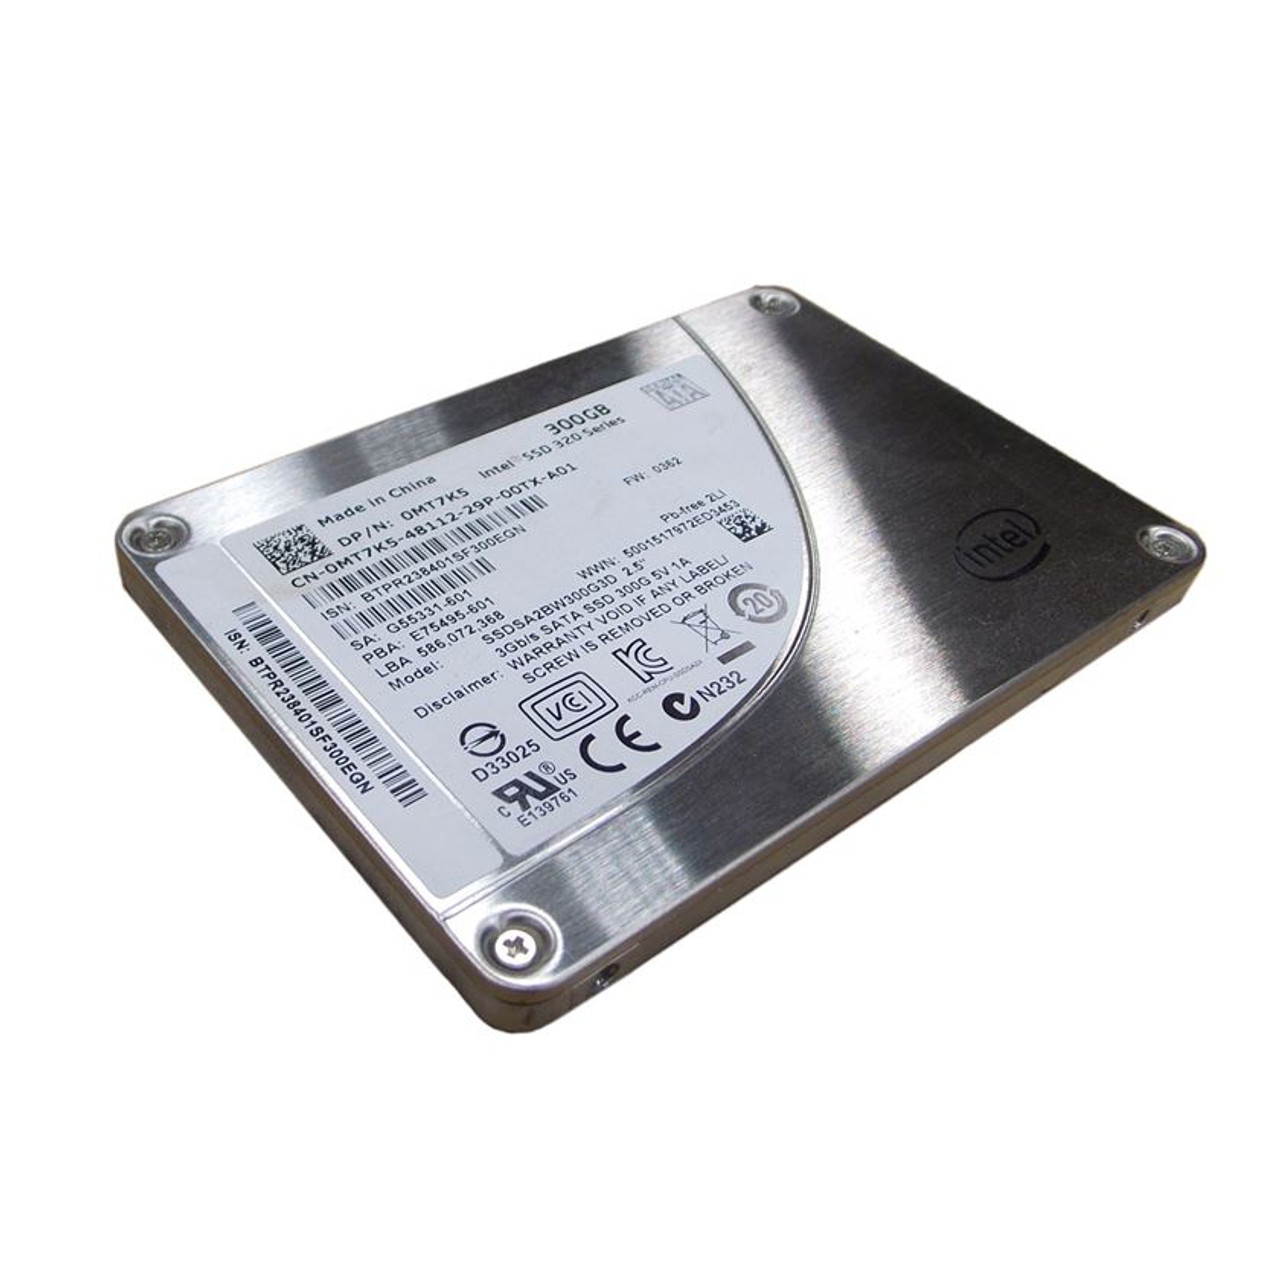 træ Erklæring Vedhæft til Dell MT7K5 Hard Drive 300GB SSD SATA 2.5"